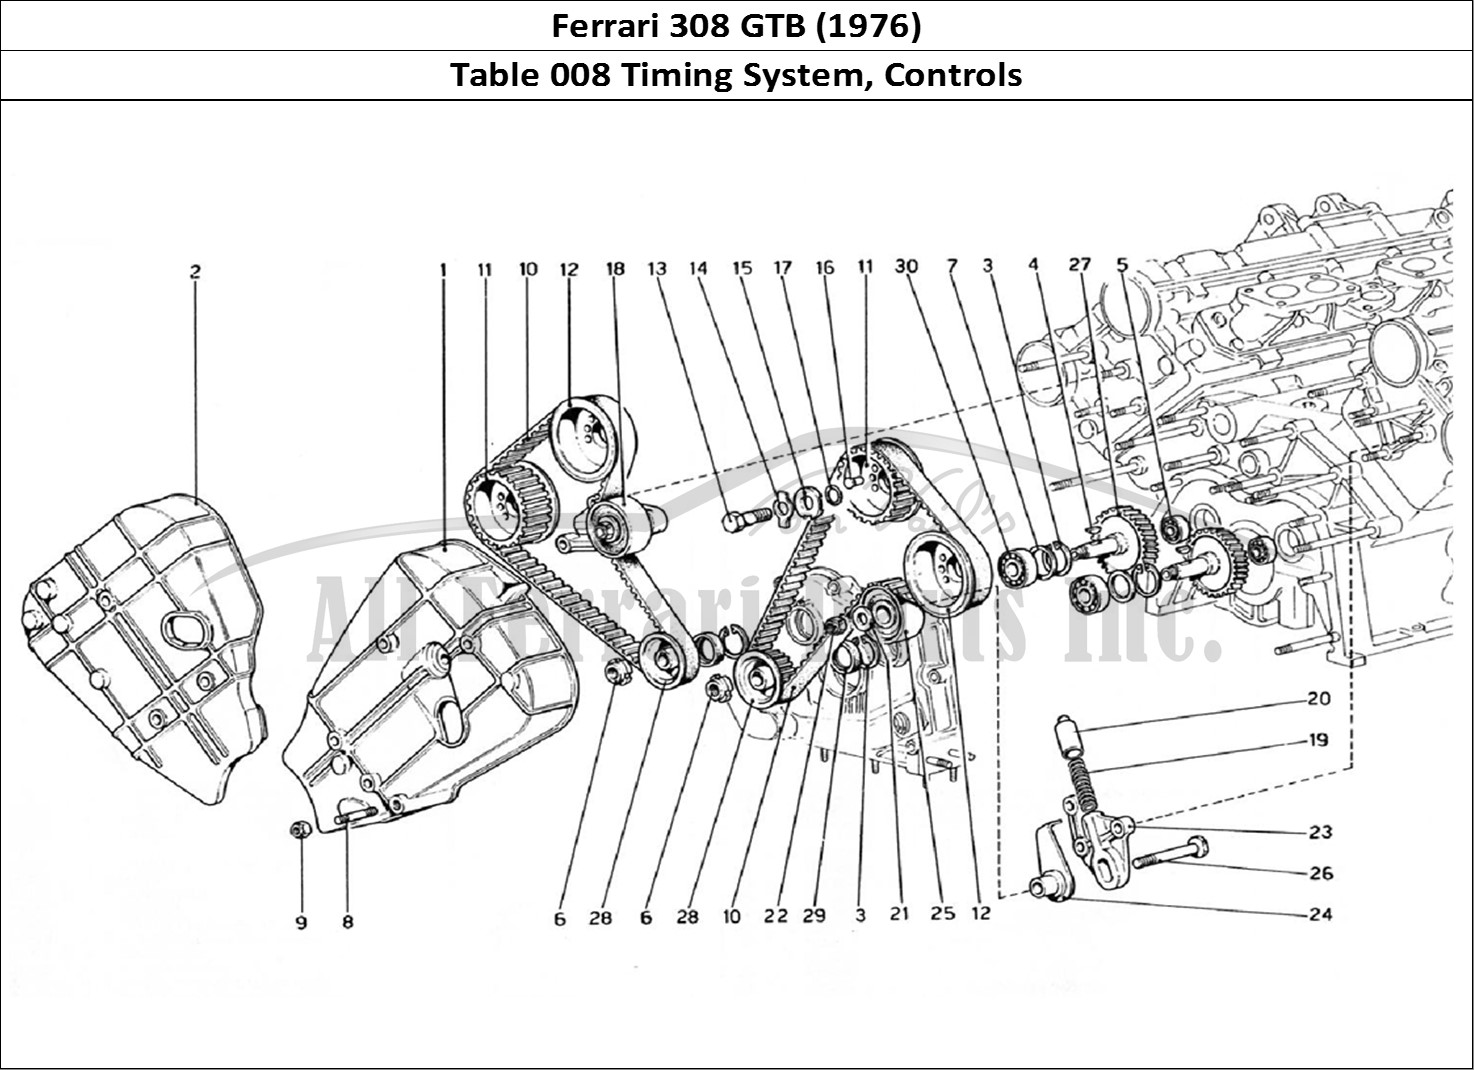 Ferrari Parts Ferrari 308 GTB (1976) Page 008 Timing System - Controls